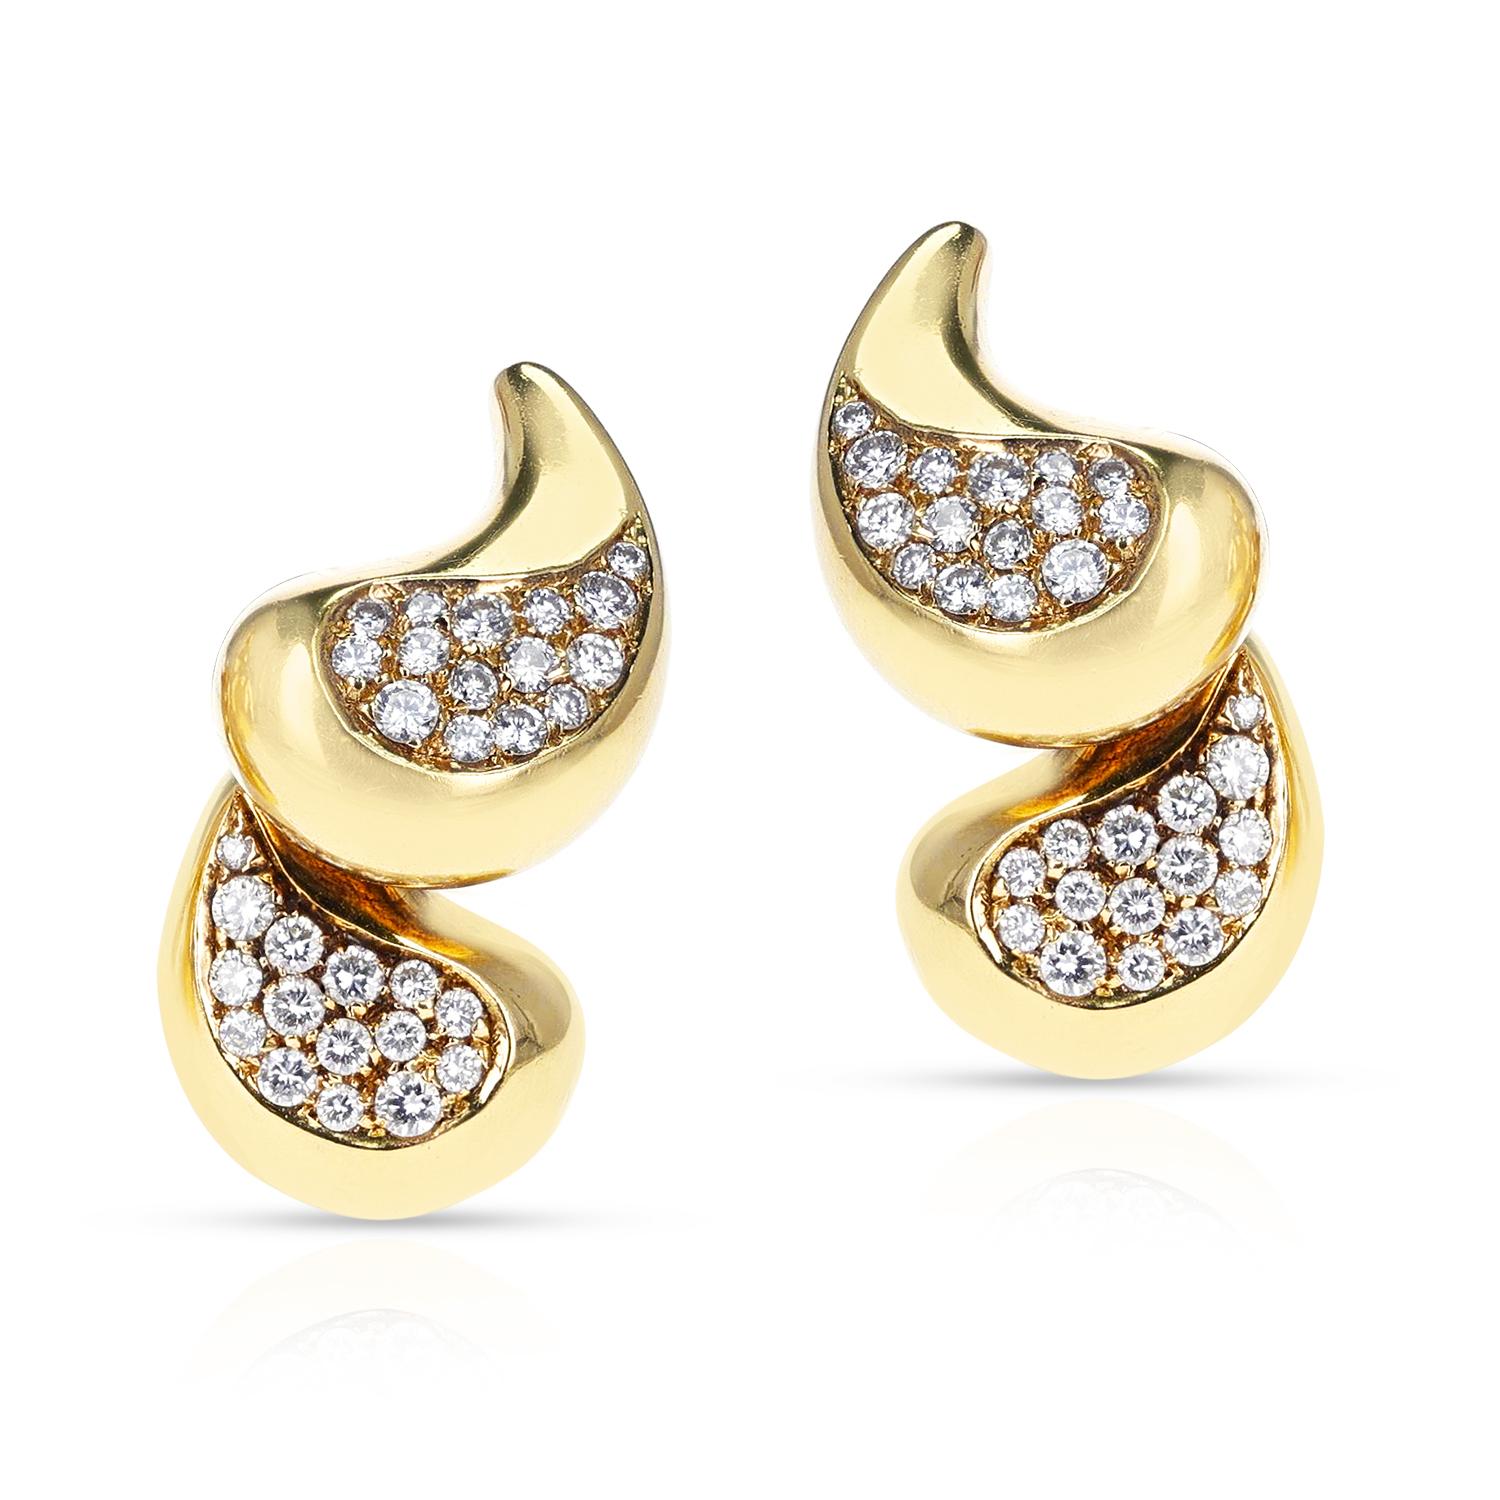 Une paire d'élégantes boucles d'oreilles Marina B en or jaune 18 carats et diamants.
Le poids total des boucles d'oreilles est de 25,28 grammes. La longueur de la boucle d'oreille est de 1,20 pouces.
